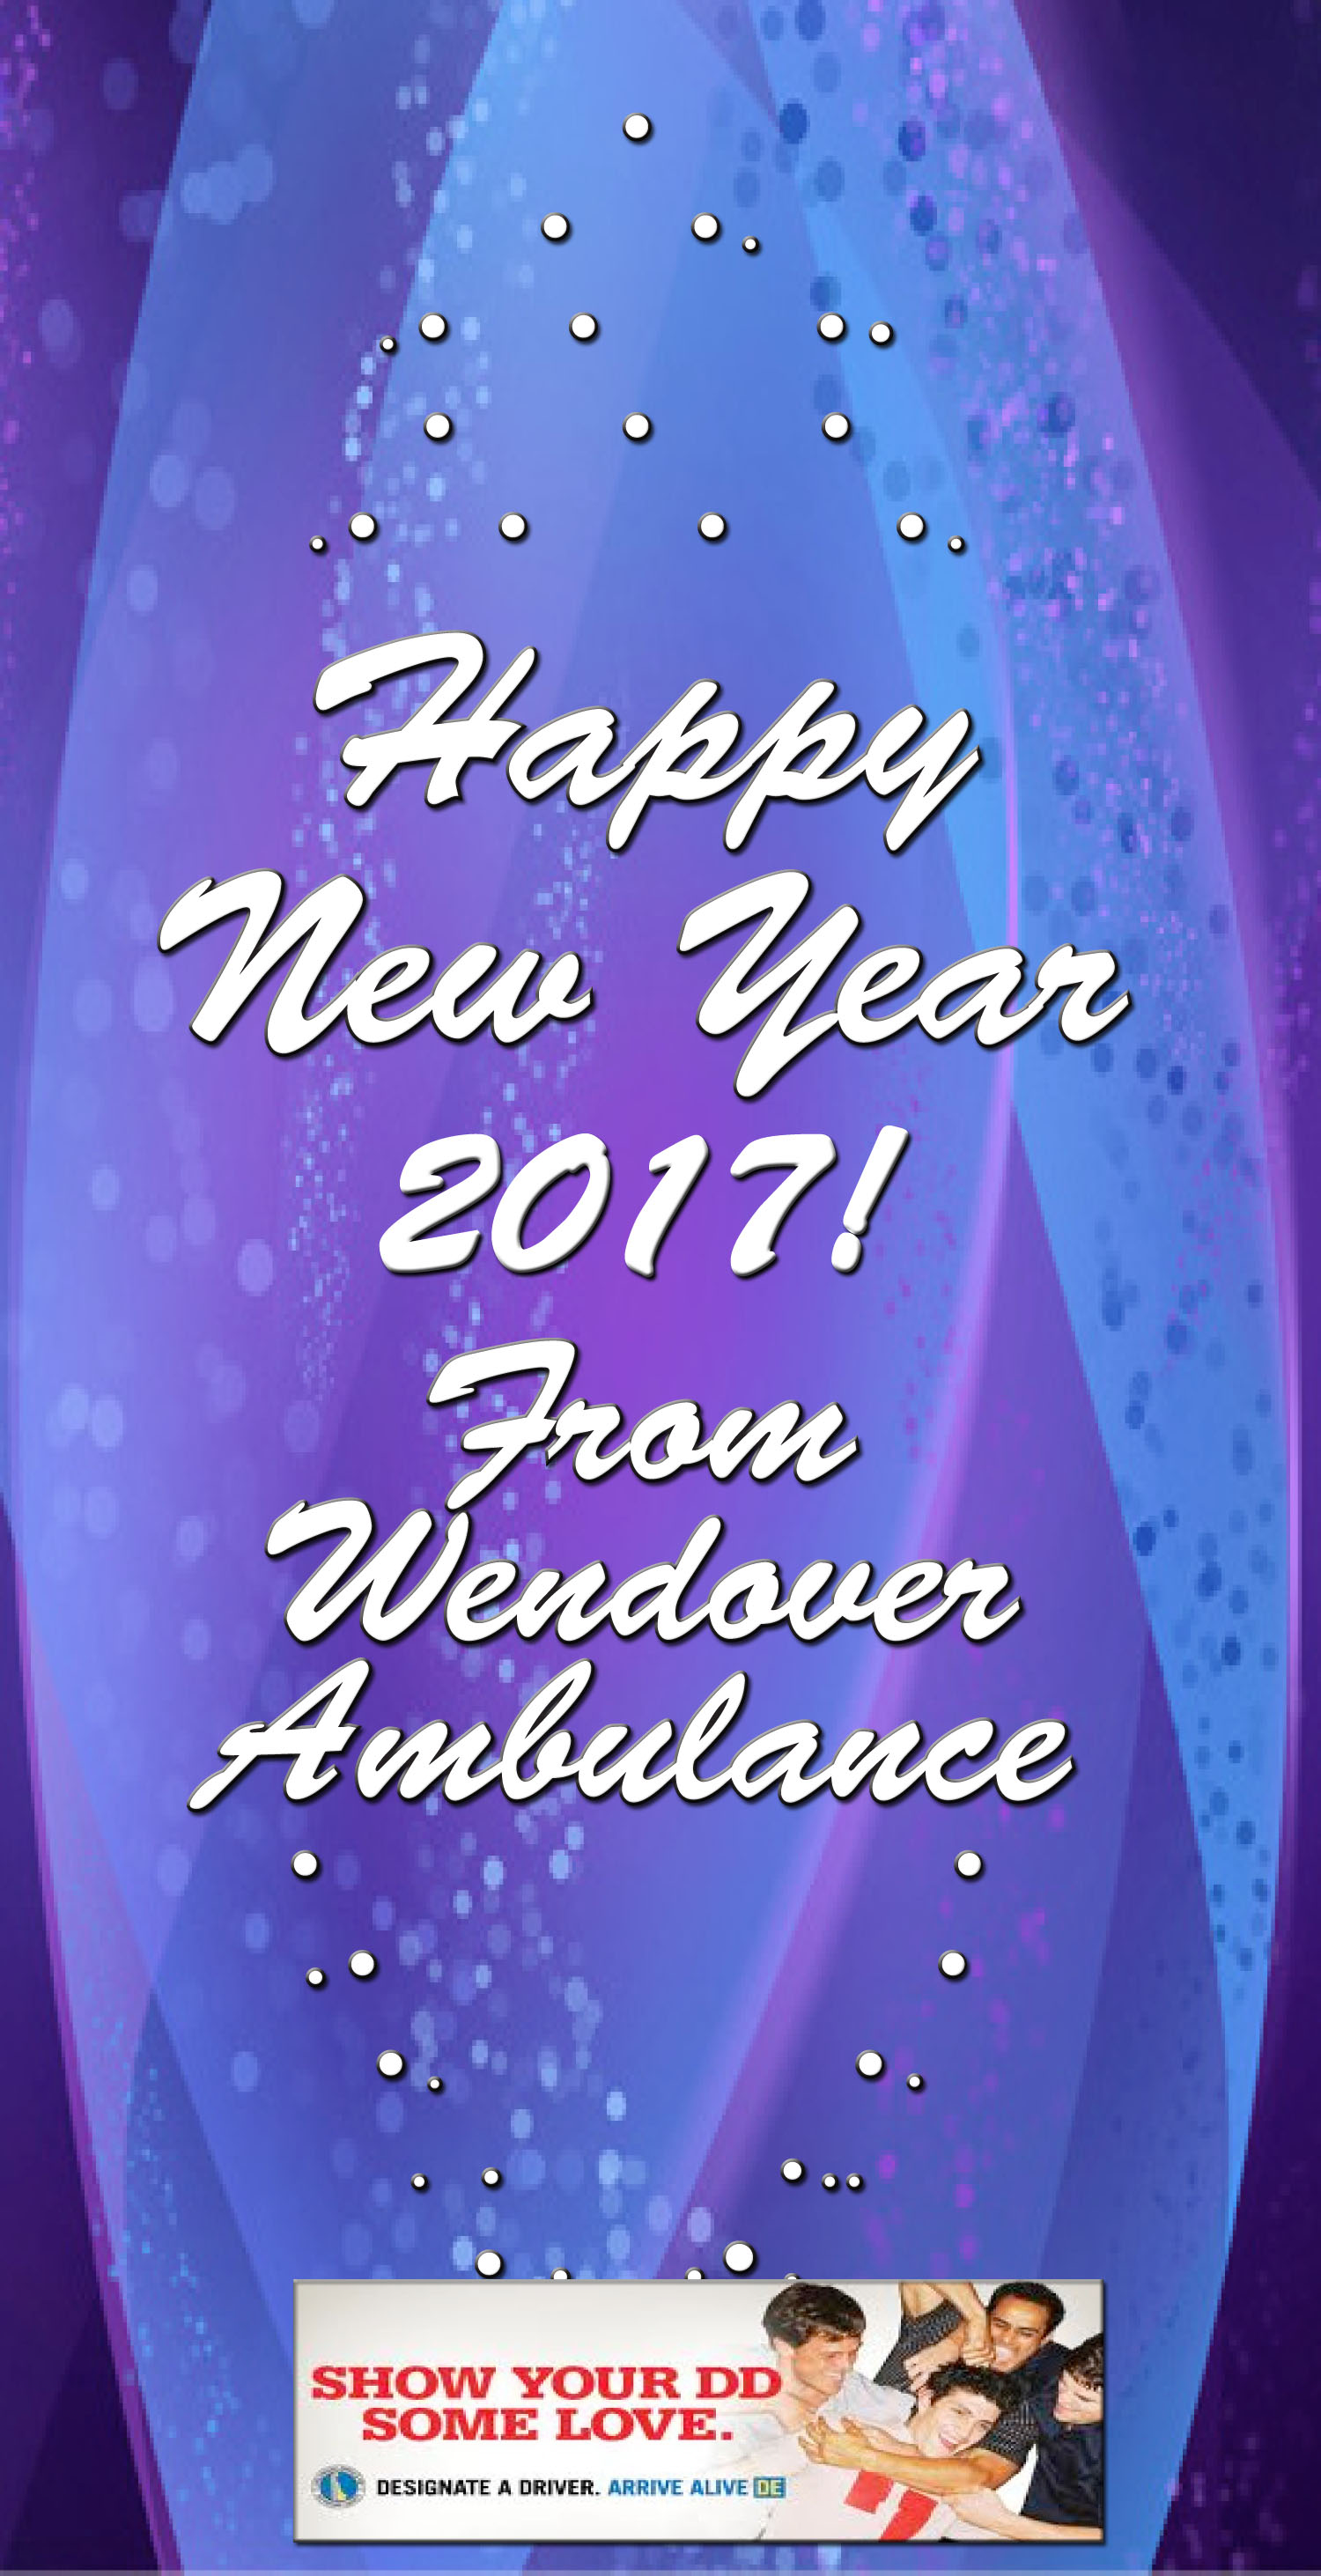 AmbulanceNew Year 2017